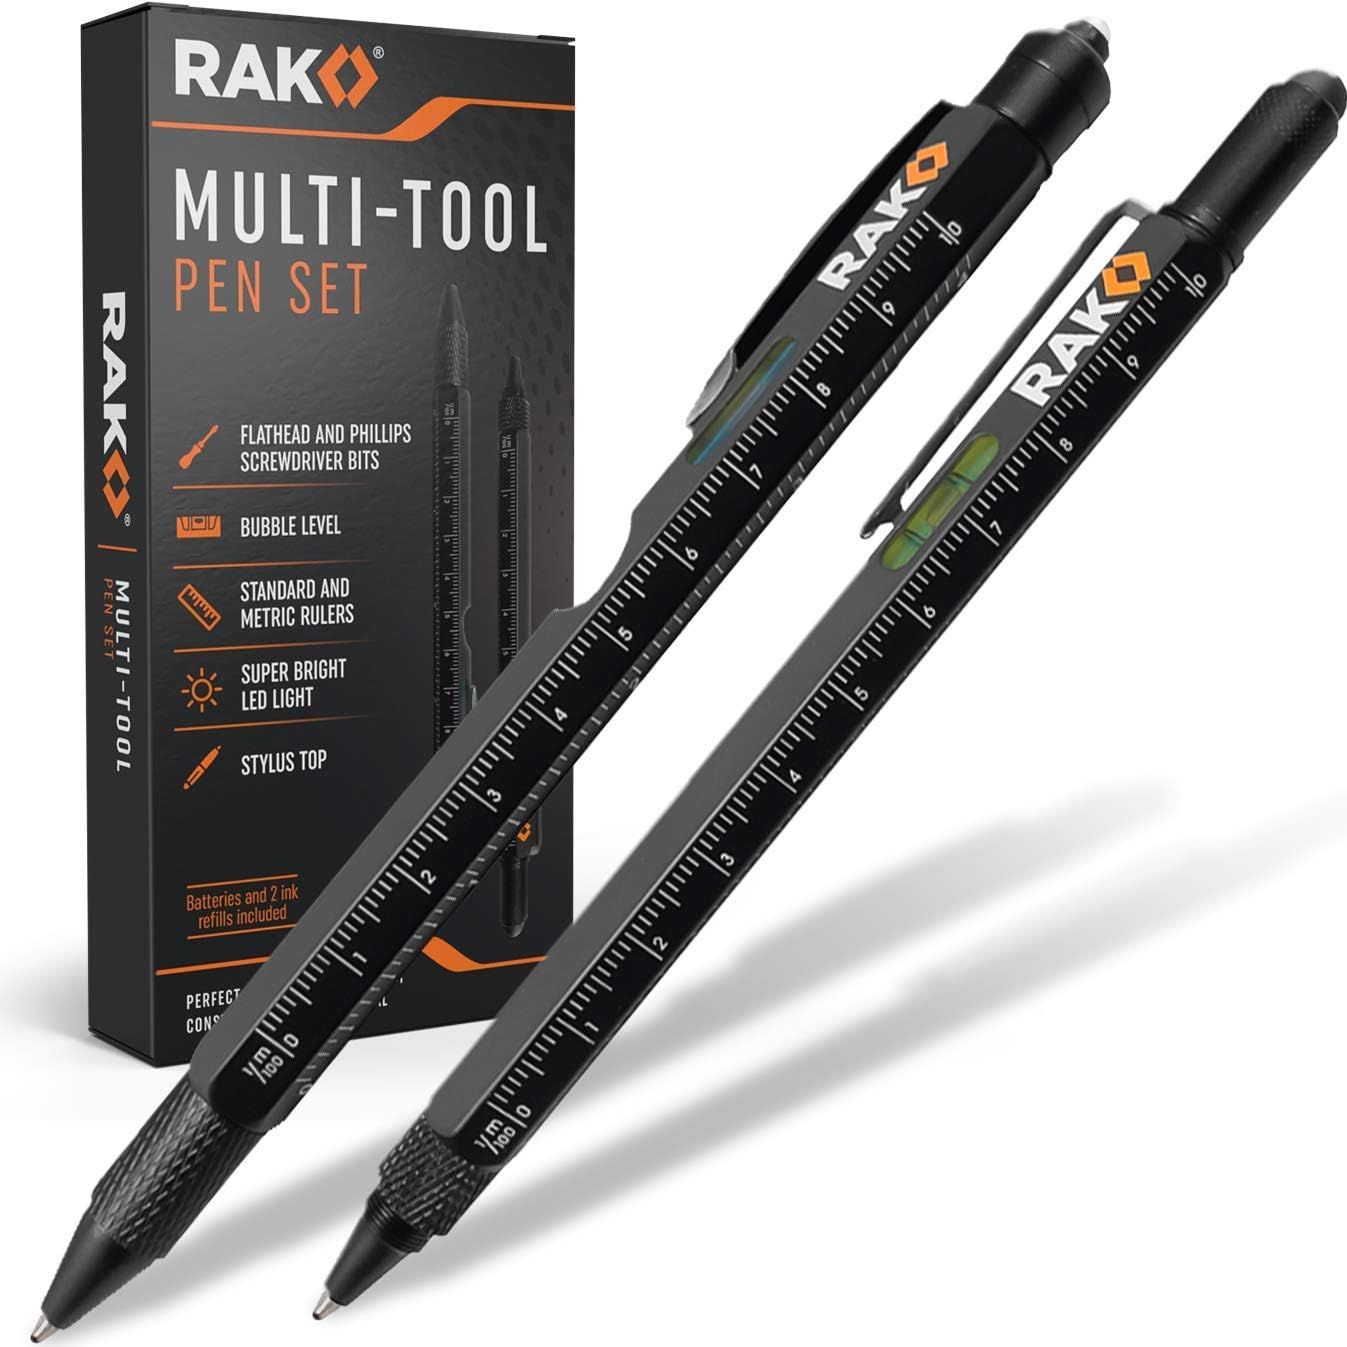 RAK Multi-Tool 2Pc Pen Set - LED Light, Touchscreen Stylus, Ruler, Level, Bottle Opener, Phillips... | Amazon (US)